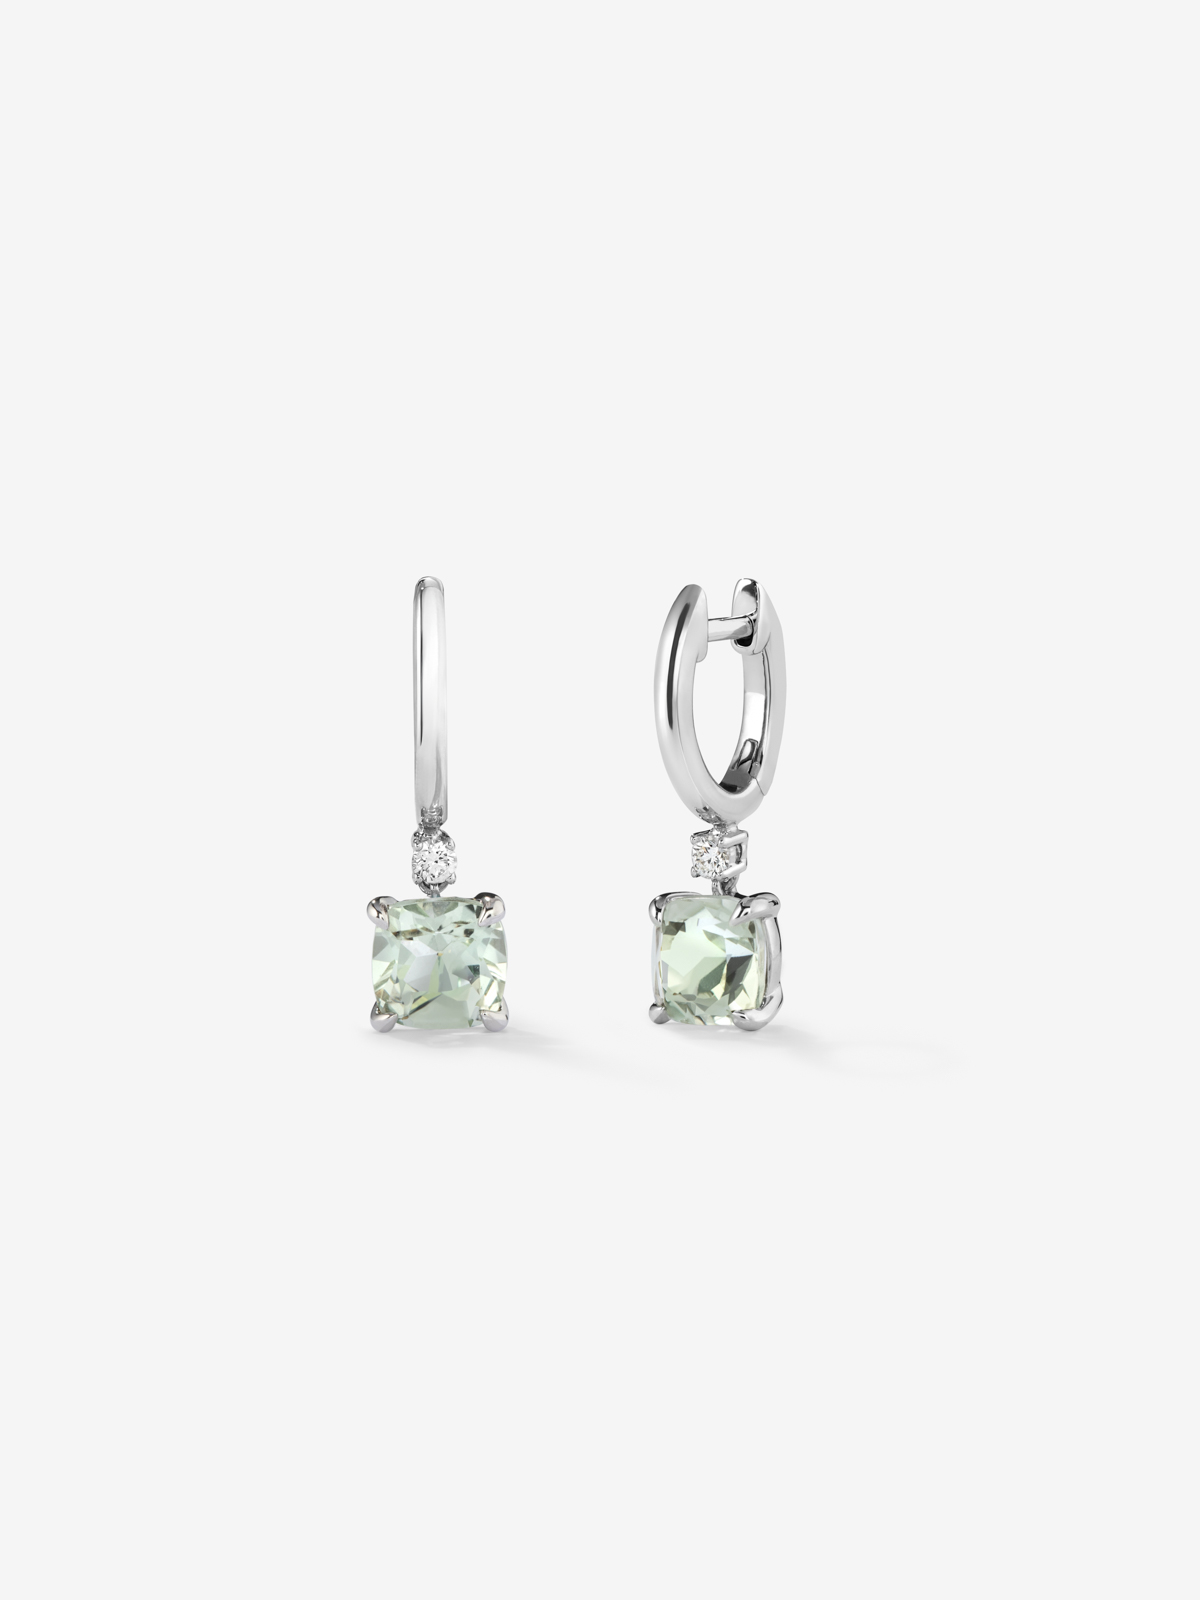 925 Silver hoop earrings with hanging green amethyst